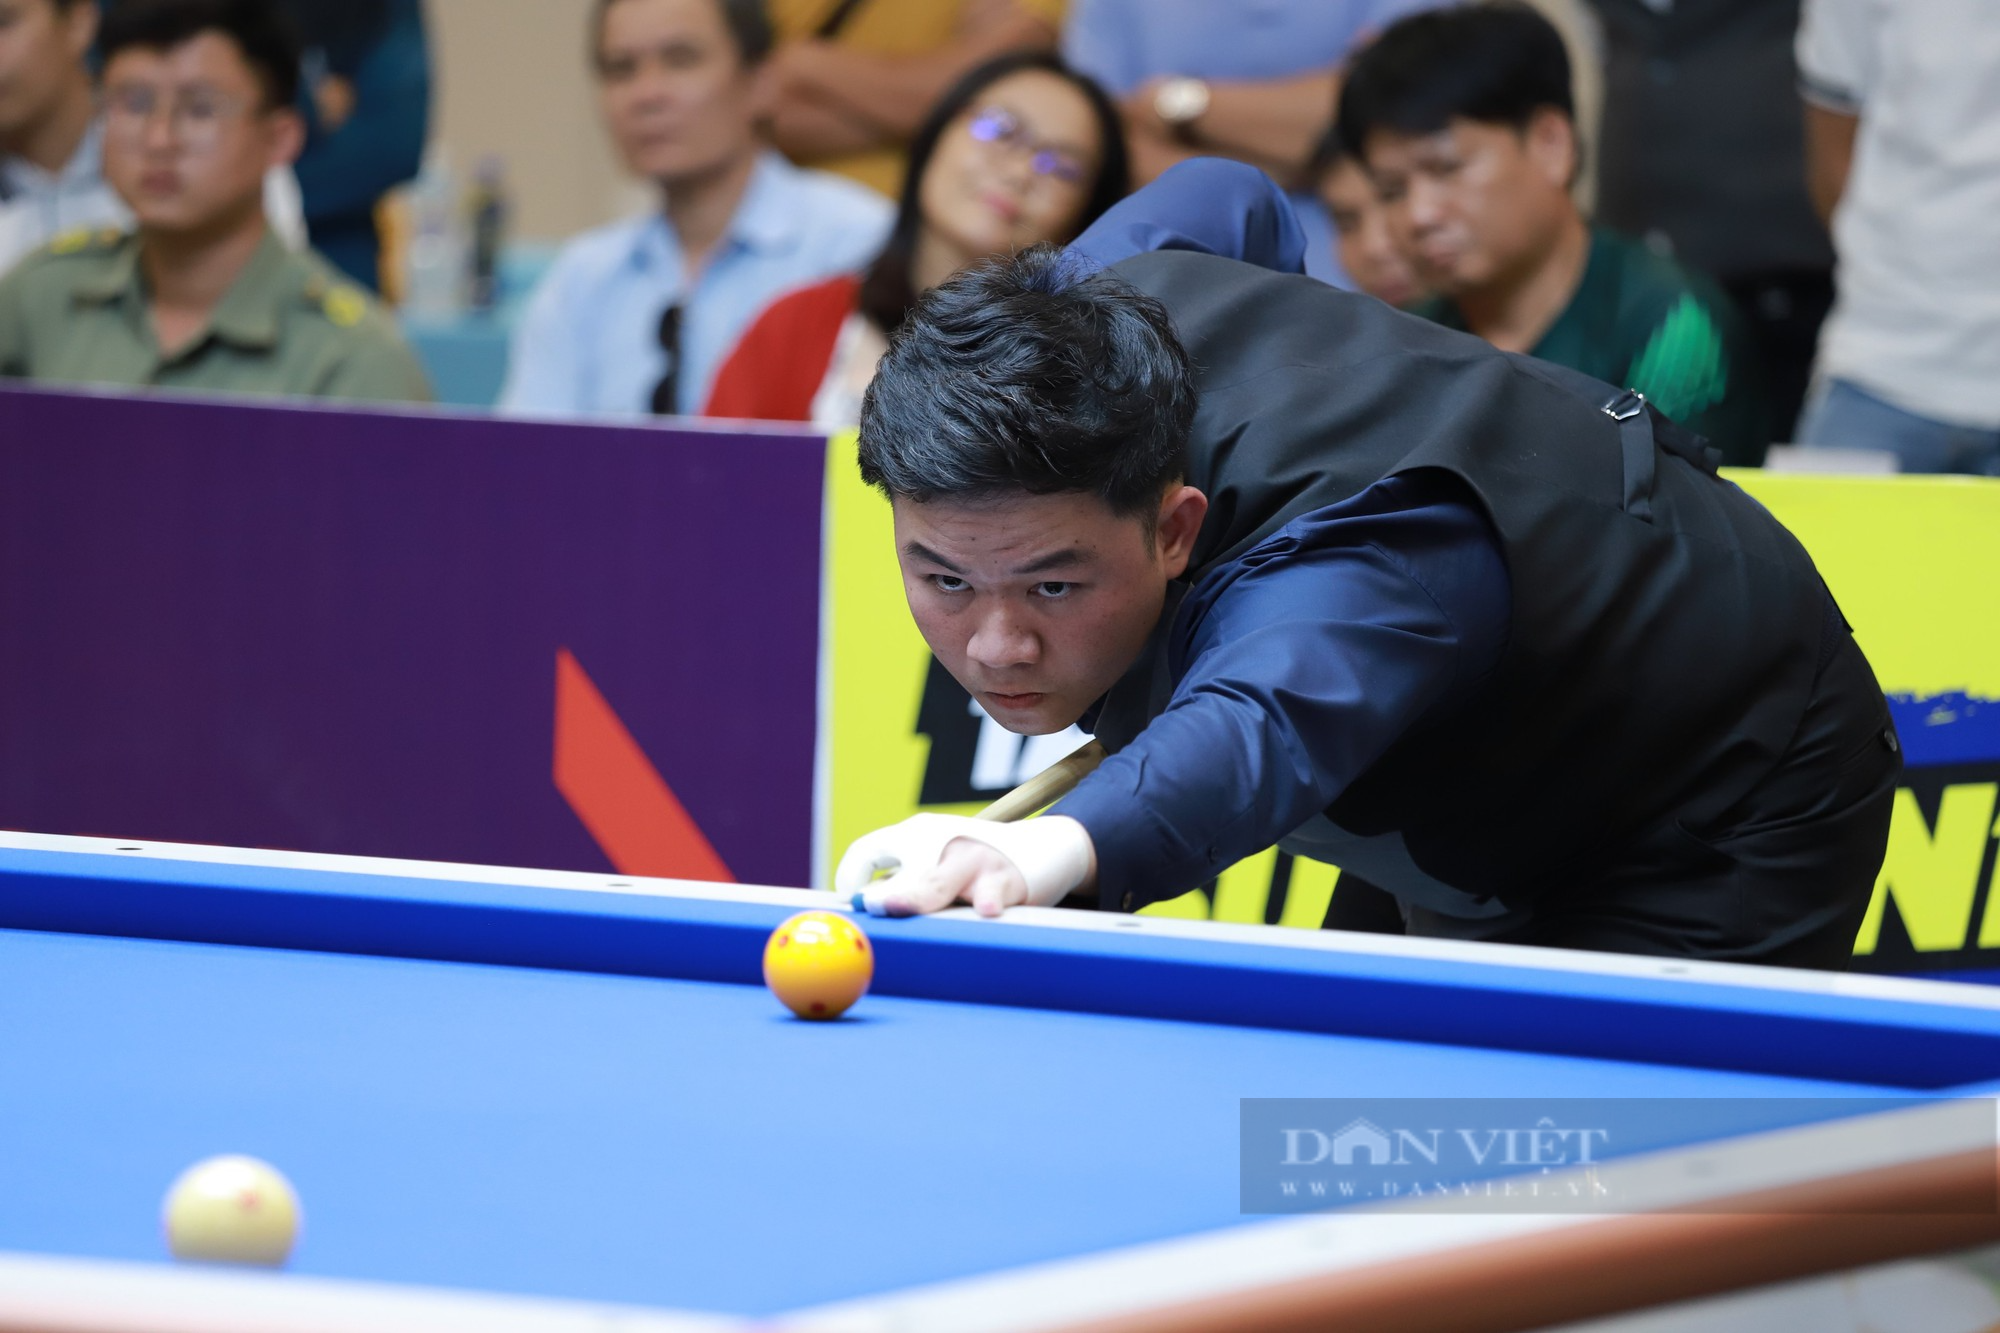 Trần Quyết Chiến bị loại sớm, Bao Phương Vinh vô địch giải Billiards quốc tế Bình Dương - Ảnh 2.